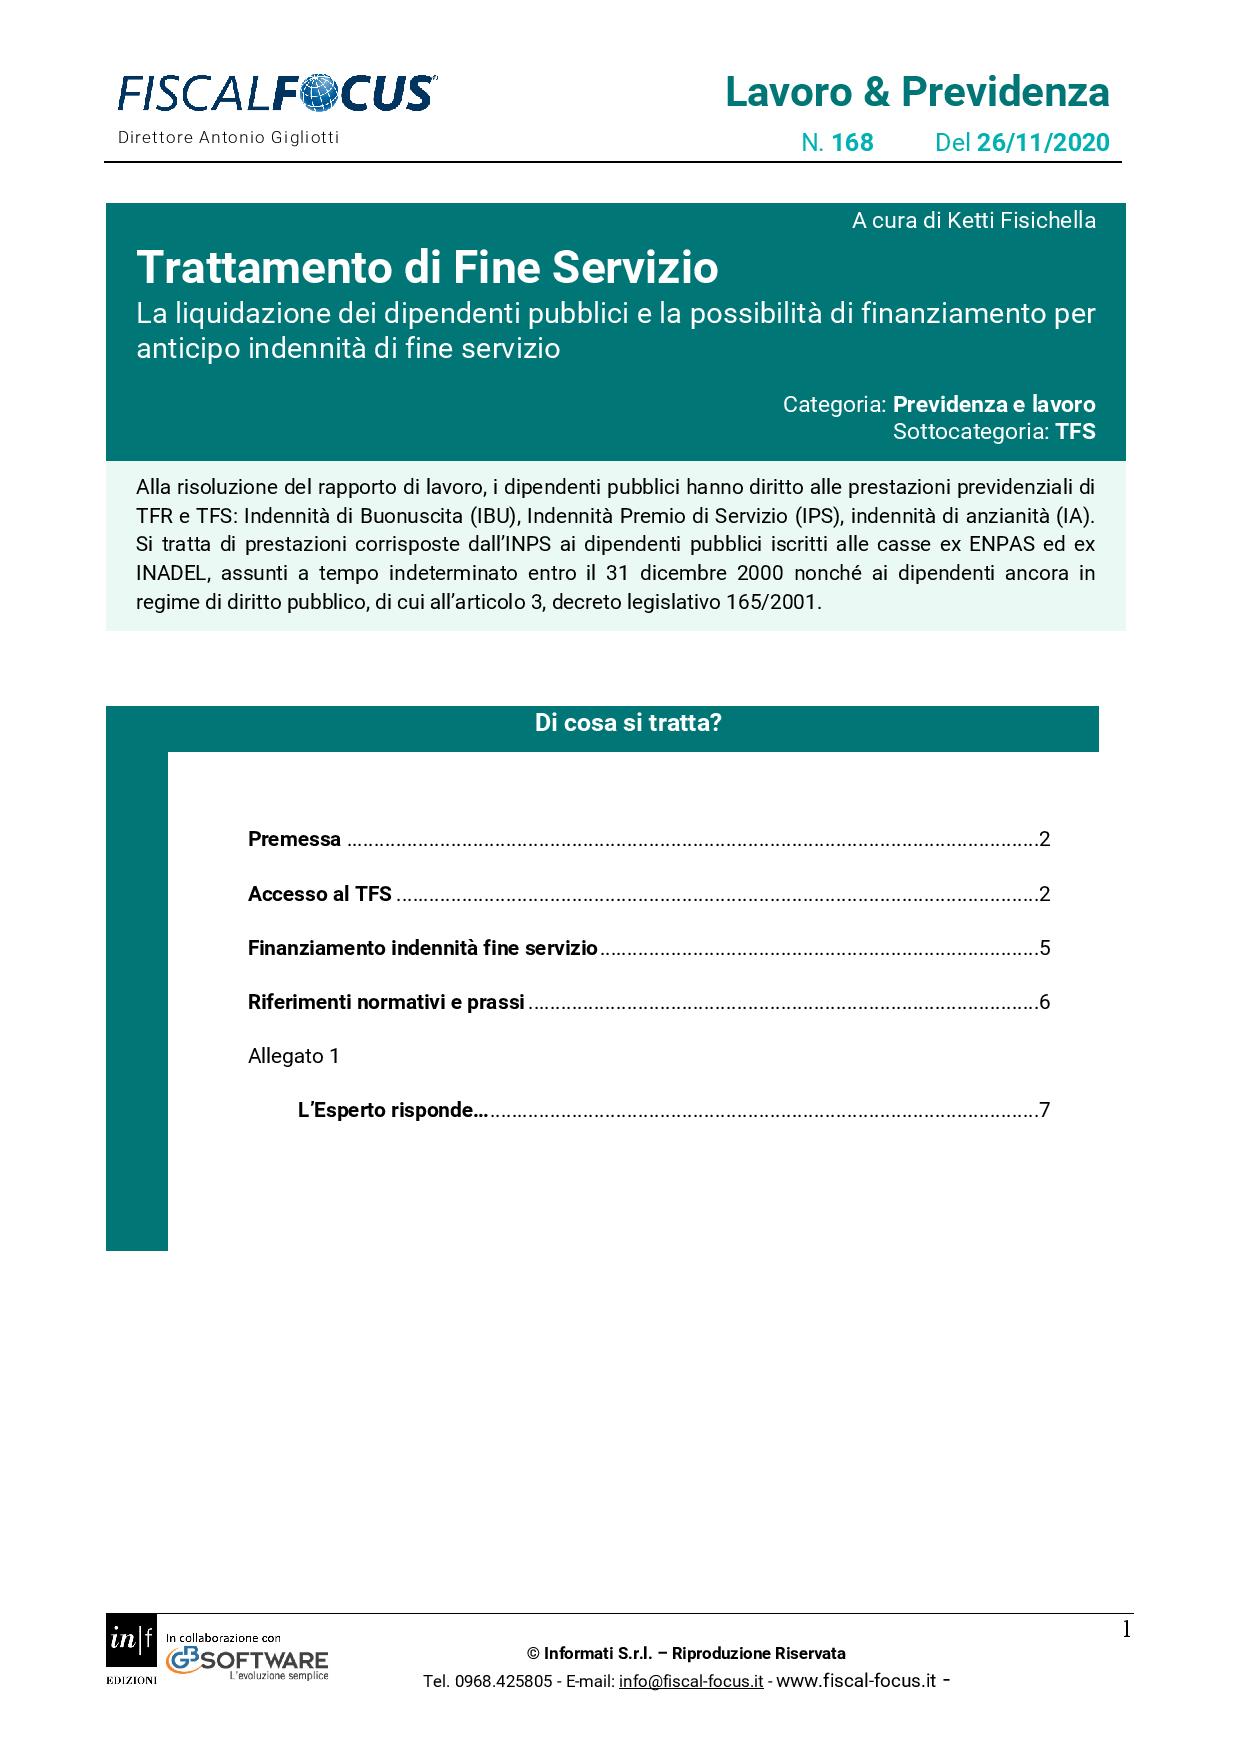 Lavoro e Previdenza n. 168 del 26.11.2020 TFS dipendenti pubblici page 001